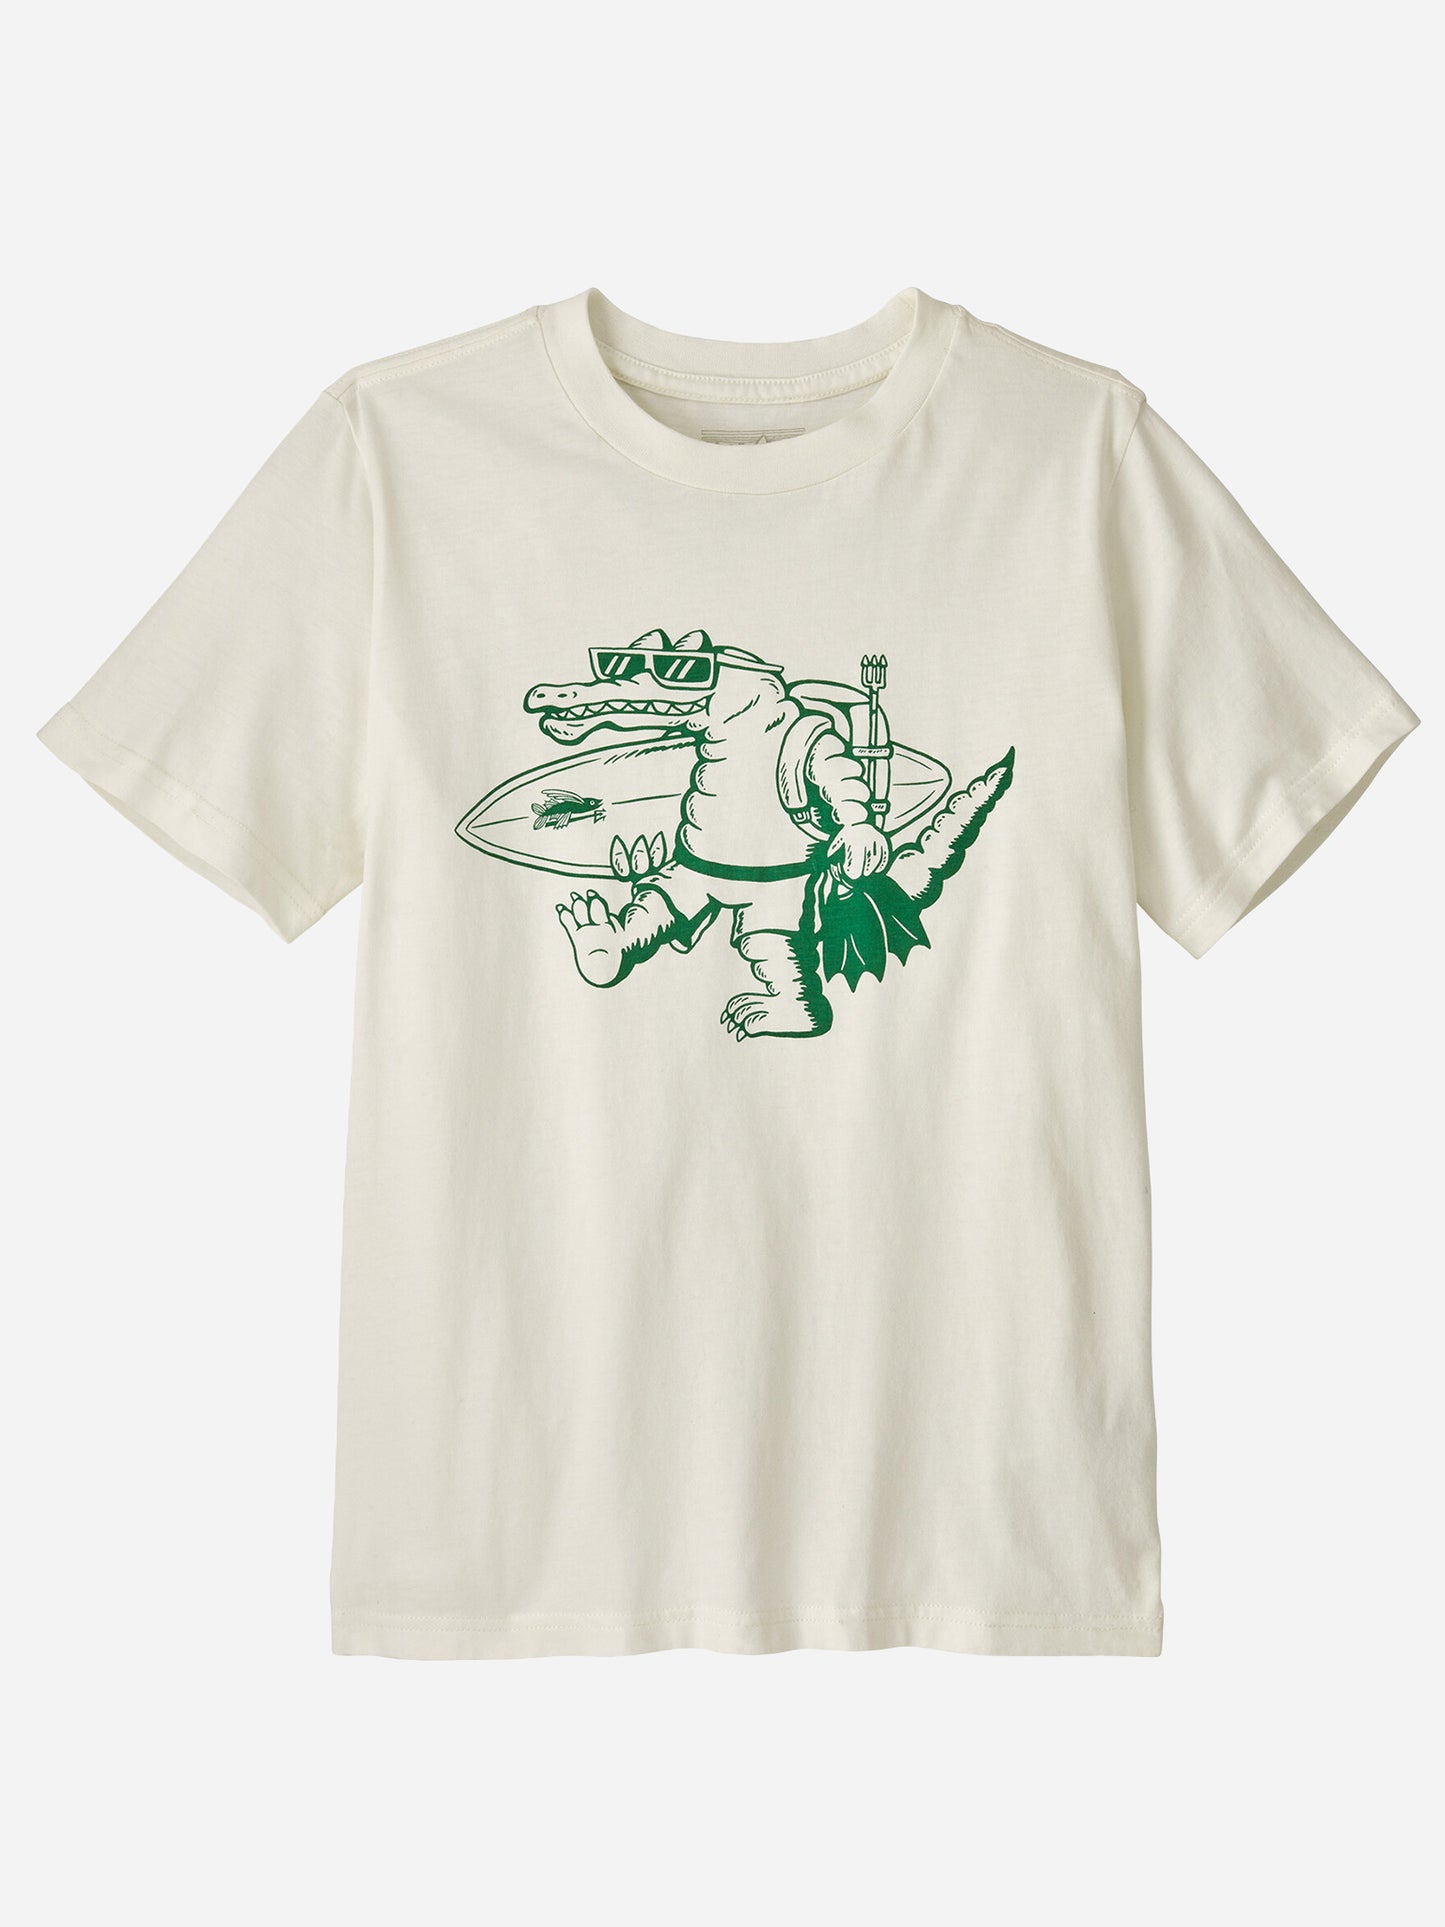 Patagonia Kids' Graphic T-Shirt